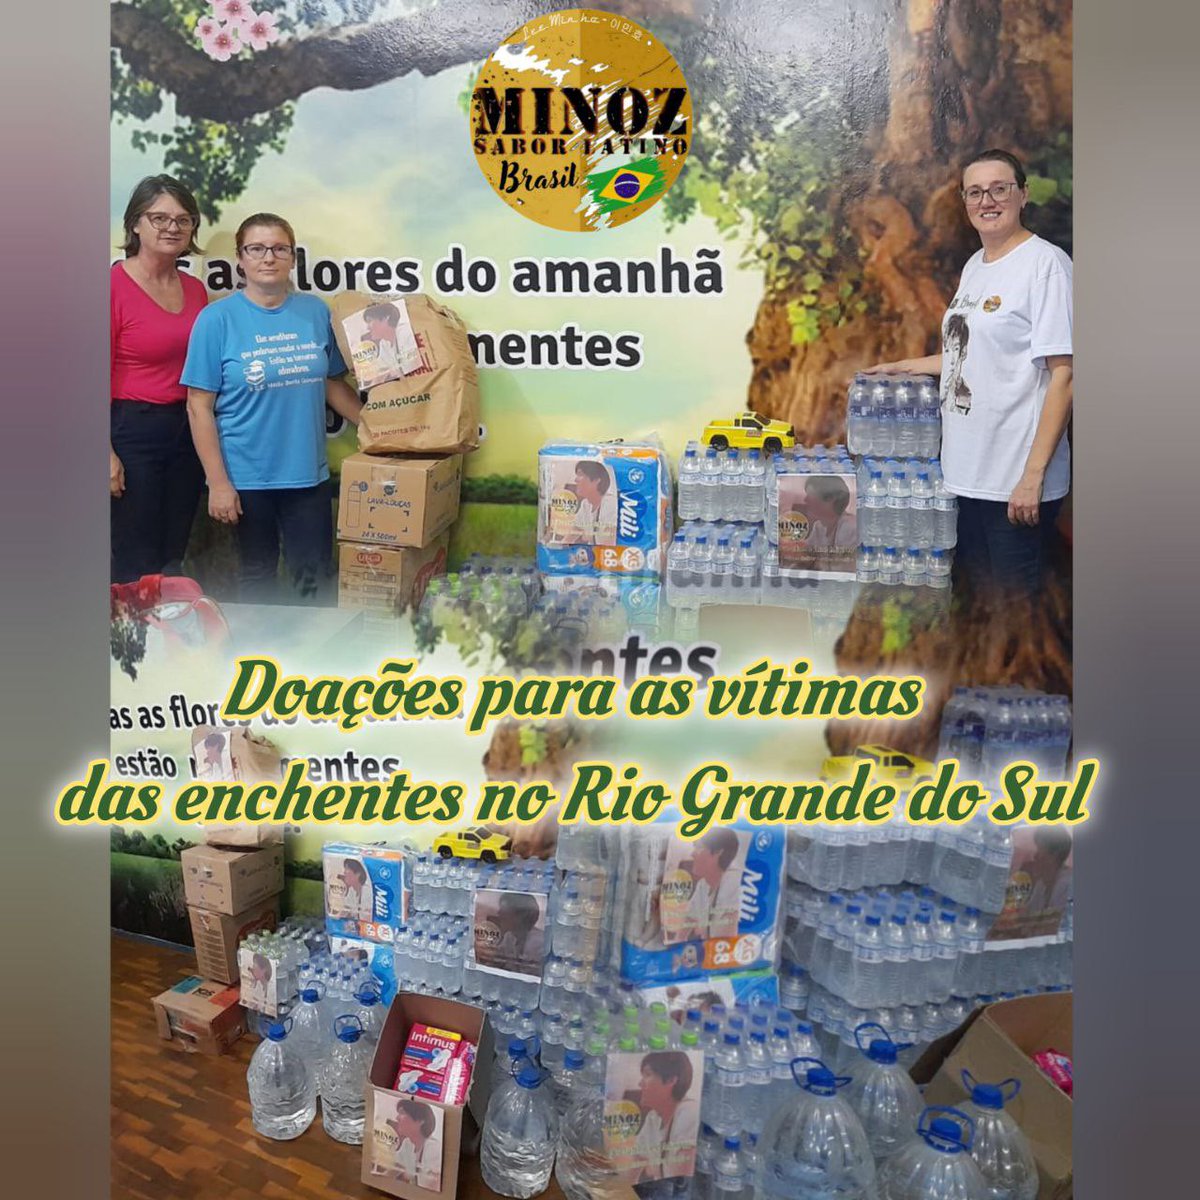 O 🇧🇷Minoz Sabor Latino Brasil🇧🇷, participou de doações de uma das grandes tragédias climáticas no Rio Grande do Sul, levando acolhimento, amor e esperança com um lindo gesto de solidariedade 
Parabéns!!👏🏼👏🏼👏🏼
@ActorLeeMinHo 

#2ºaniversariominozsaborlatinobrasil